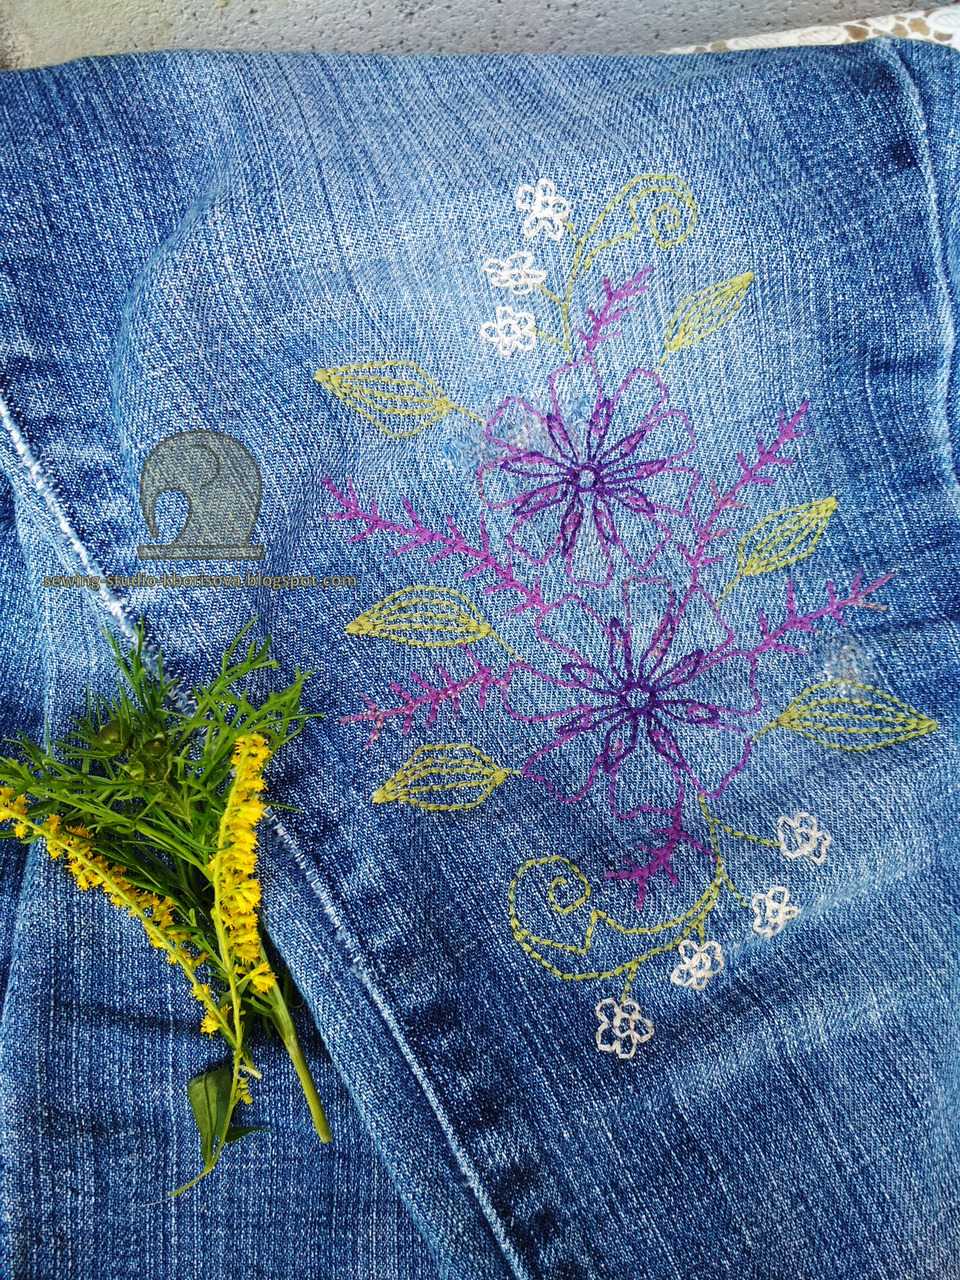 Как сделать красивую вышивку на джинсах - идеи